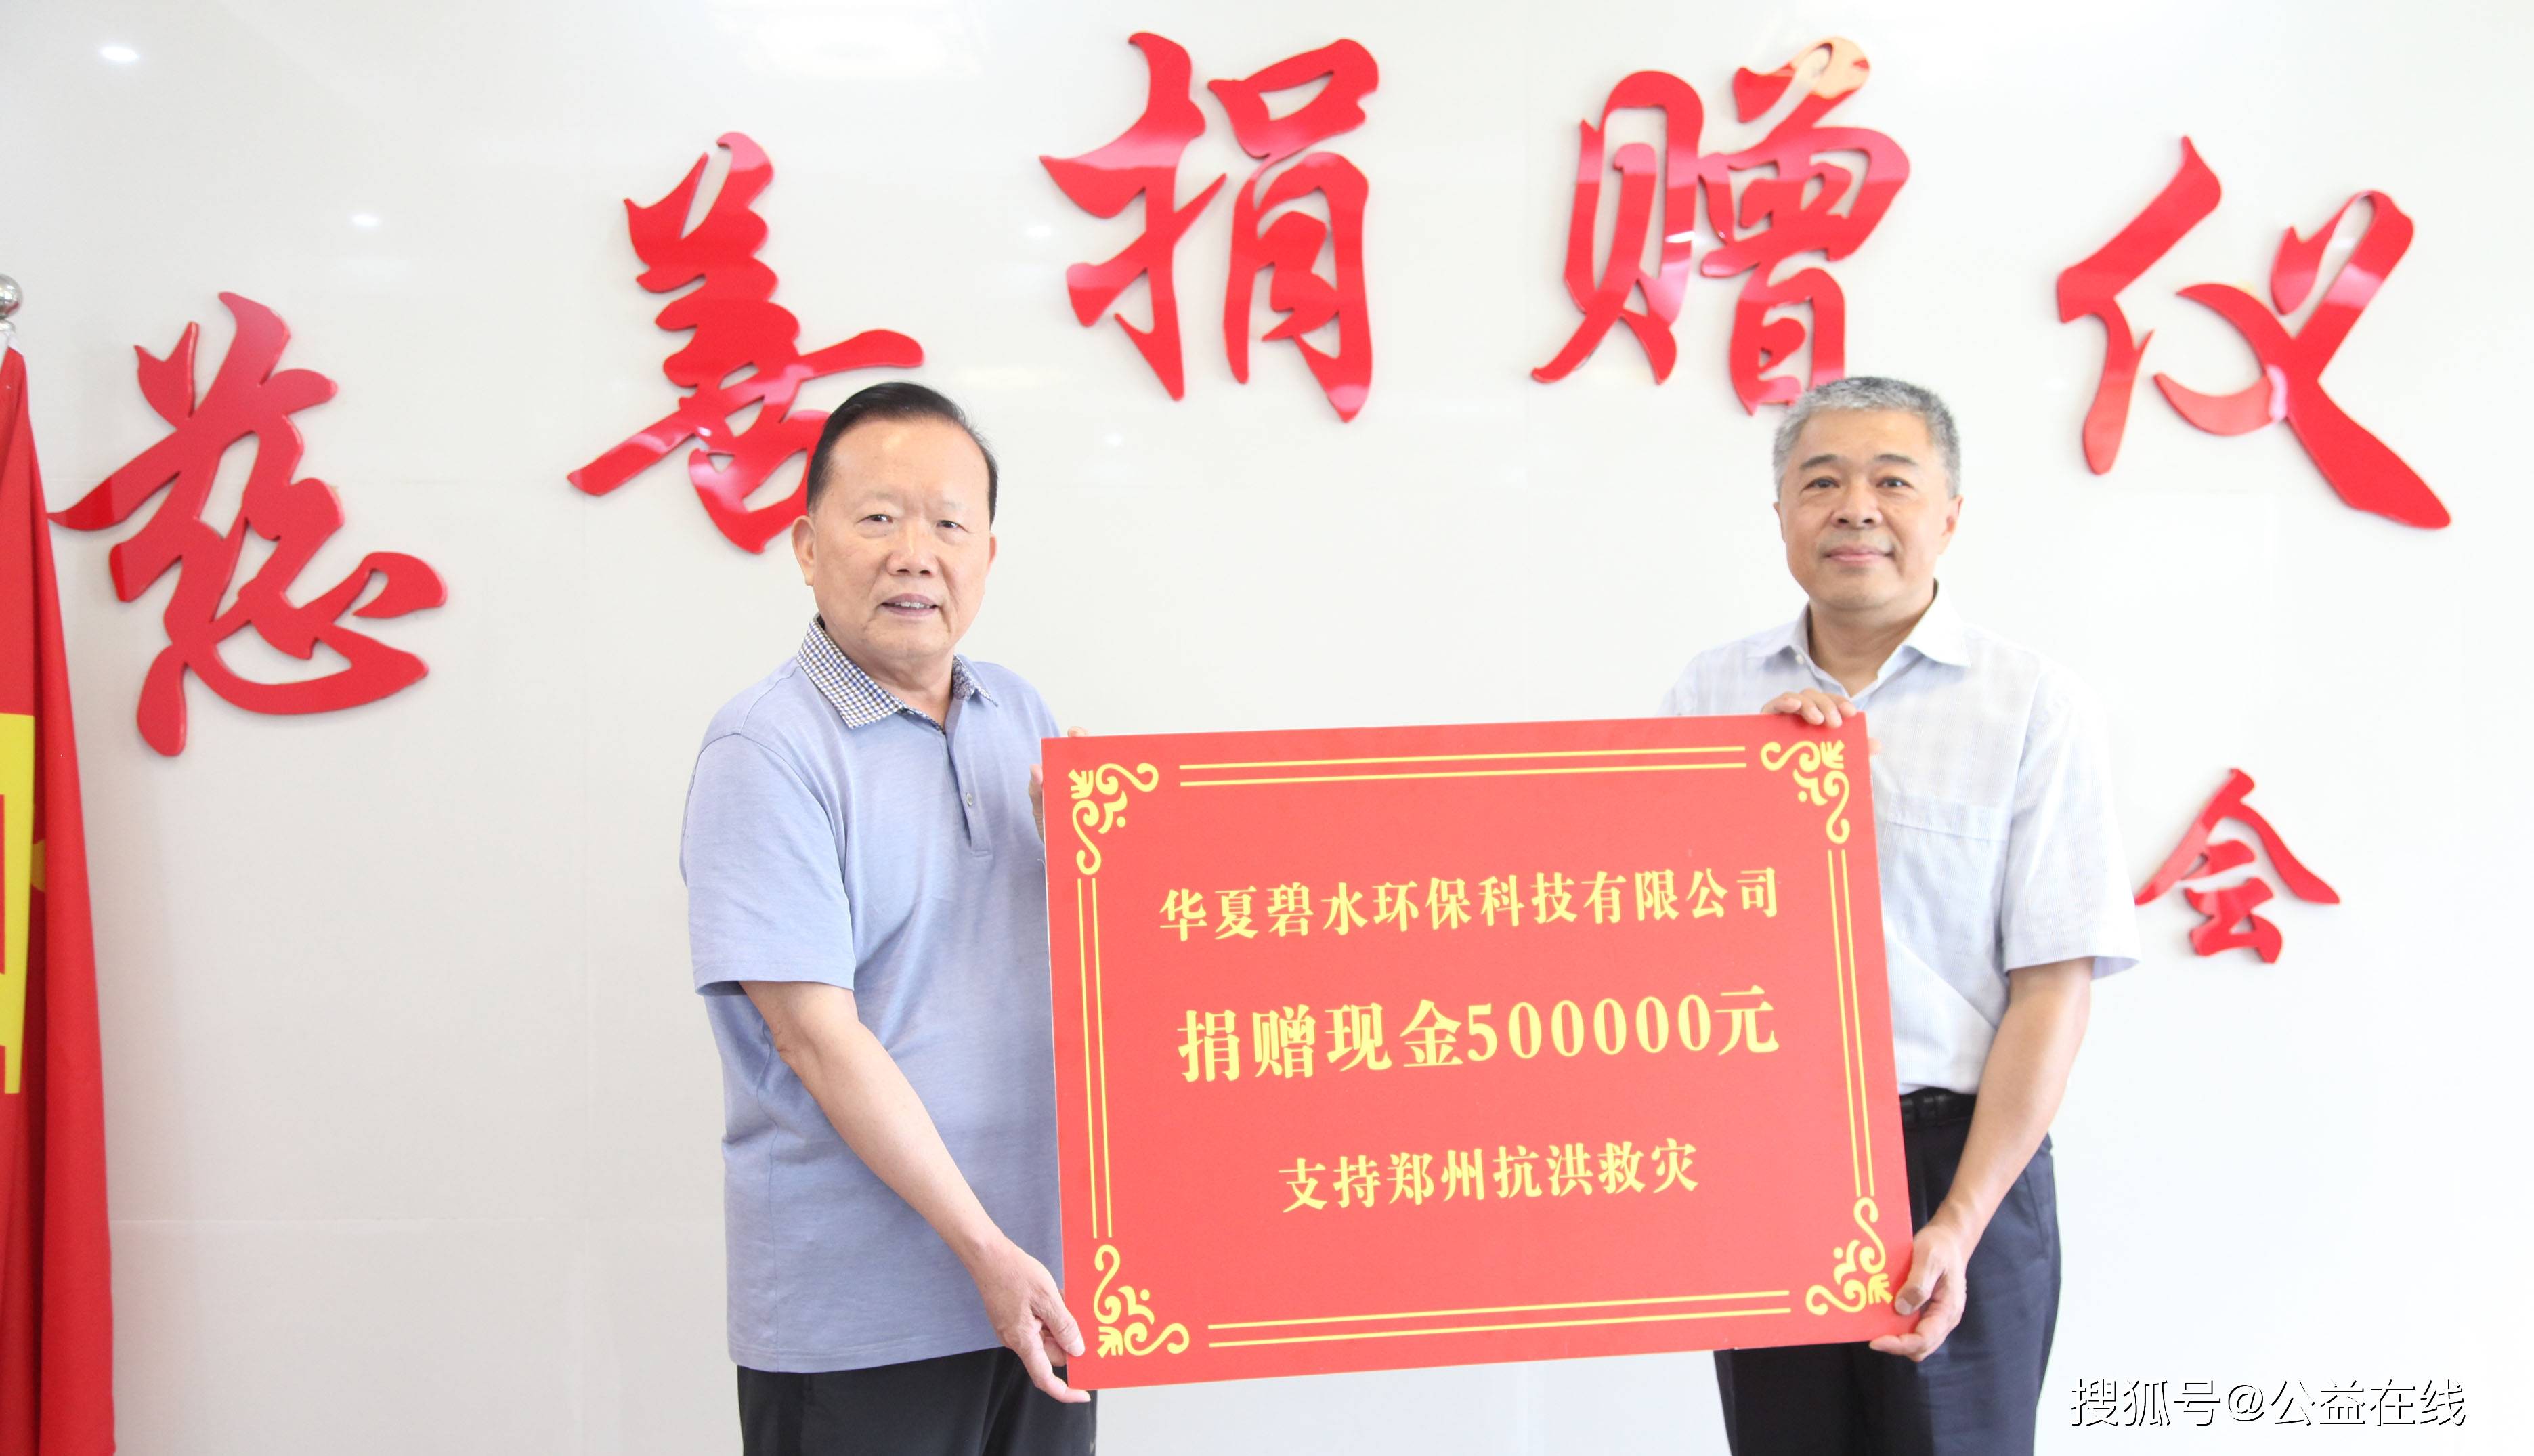 华夏碧水公司及员工捐款55万多元支持郑州重建家园